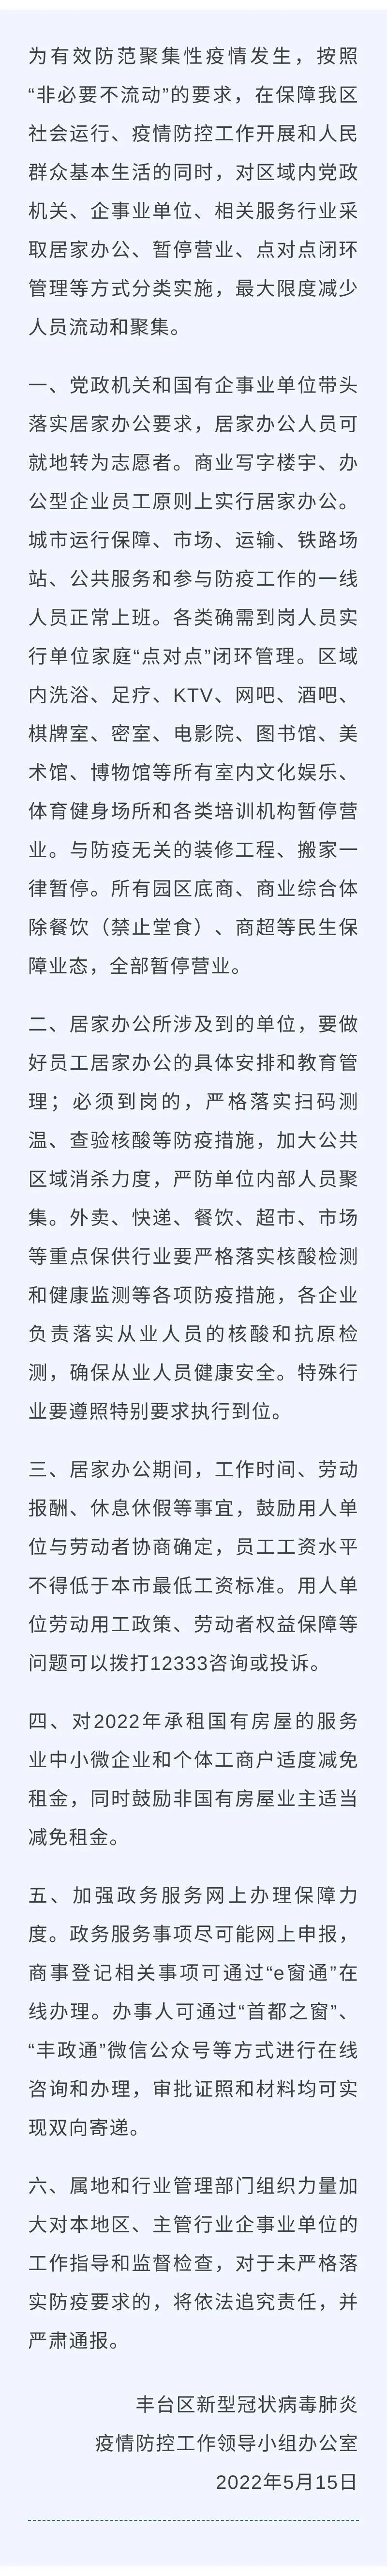 北京丰台区域内所有文娱场所暂停营业